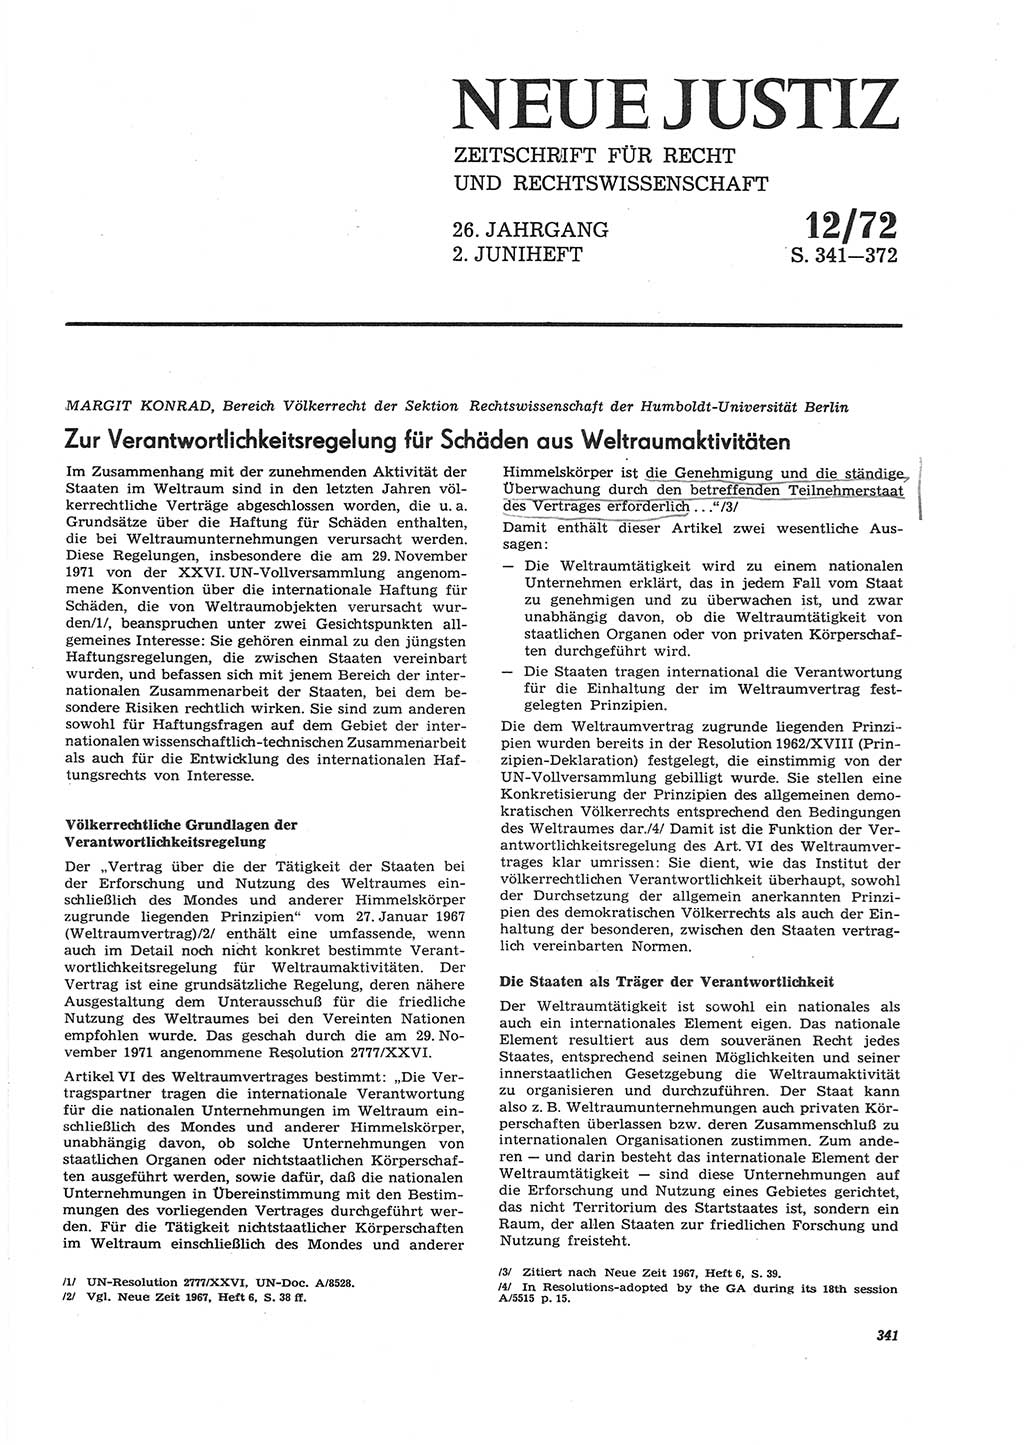 Neue Justiz (NJ), Zeitschrift für Recht und Rechtswissenschaft [Deutsche Demokratische Republik (DDR)], 26. Jahrgang 1972, Seite 341 (NJ DDR 1972, S. 341)